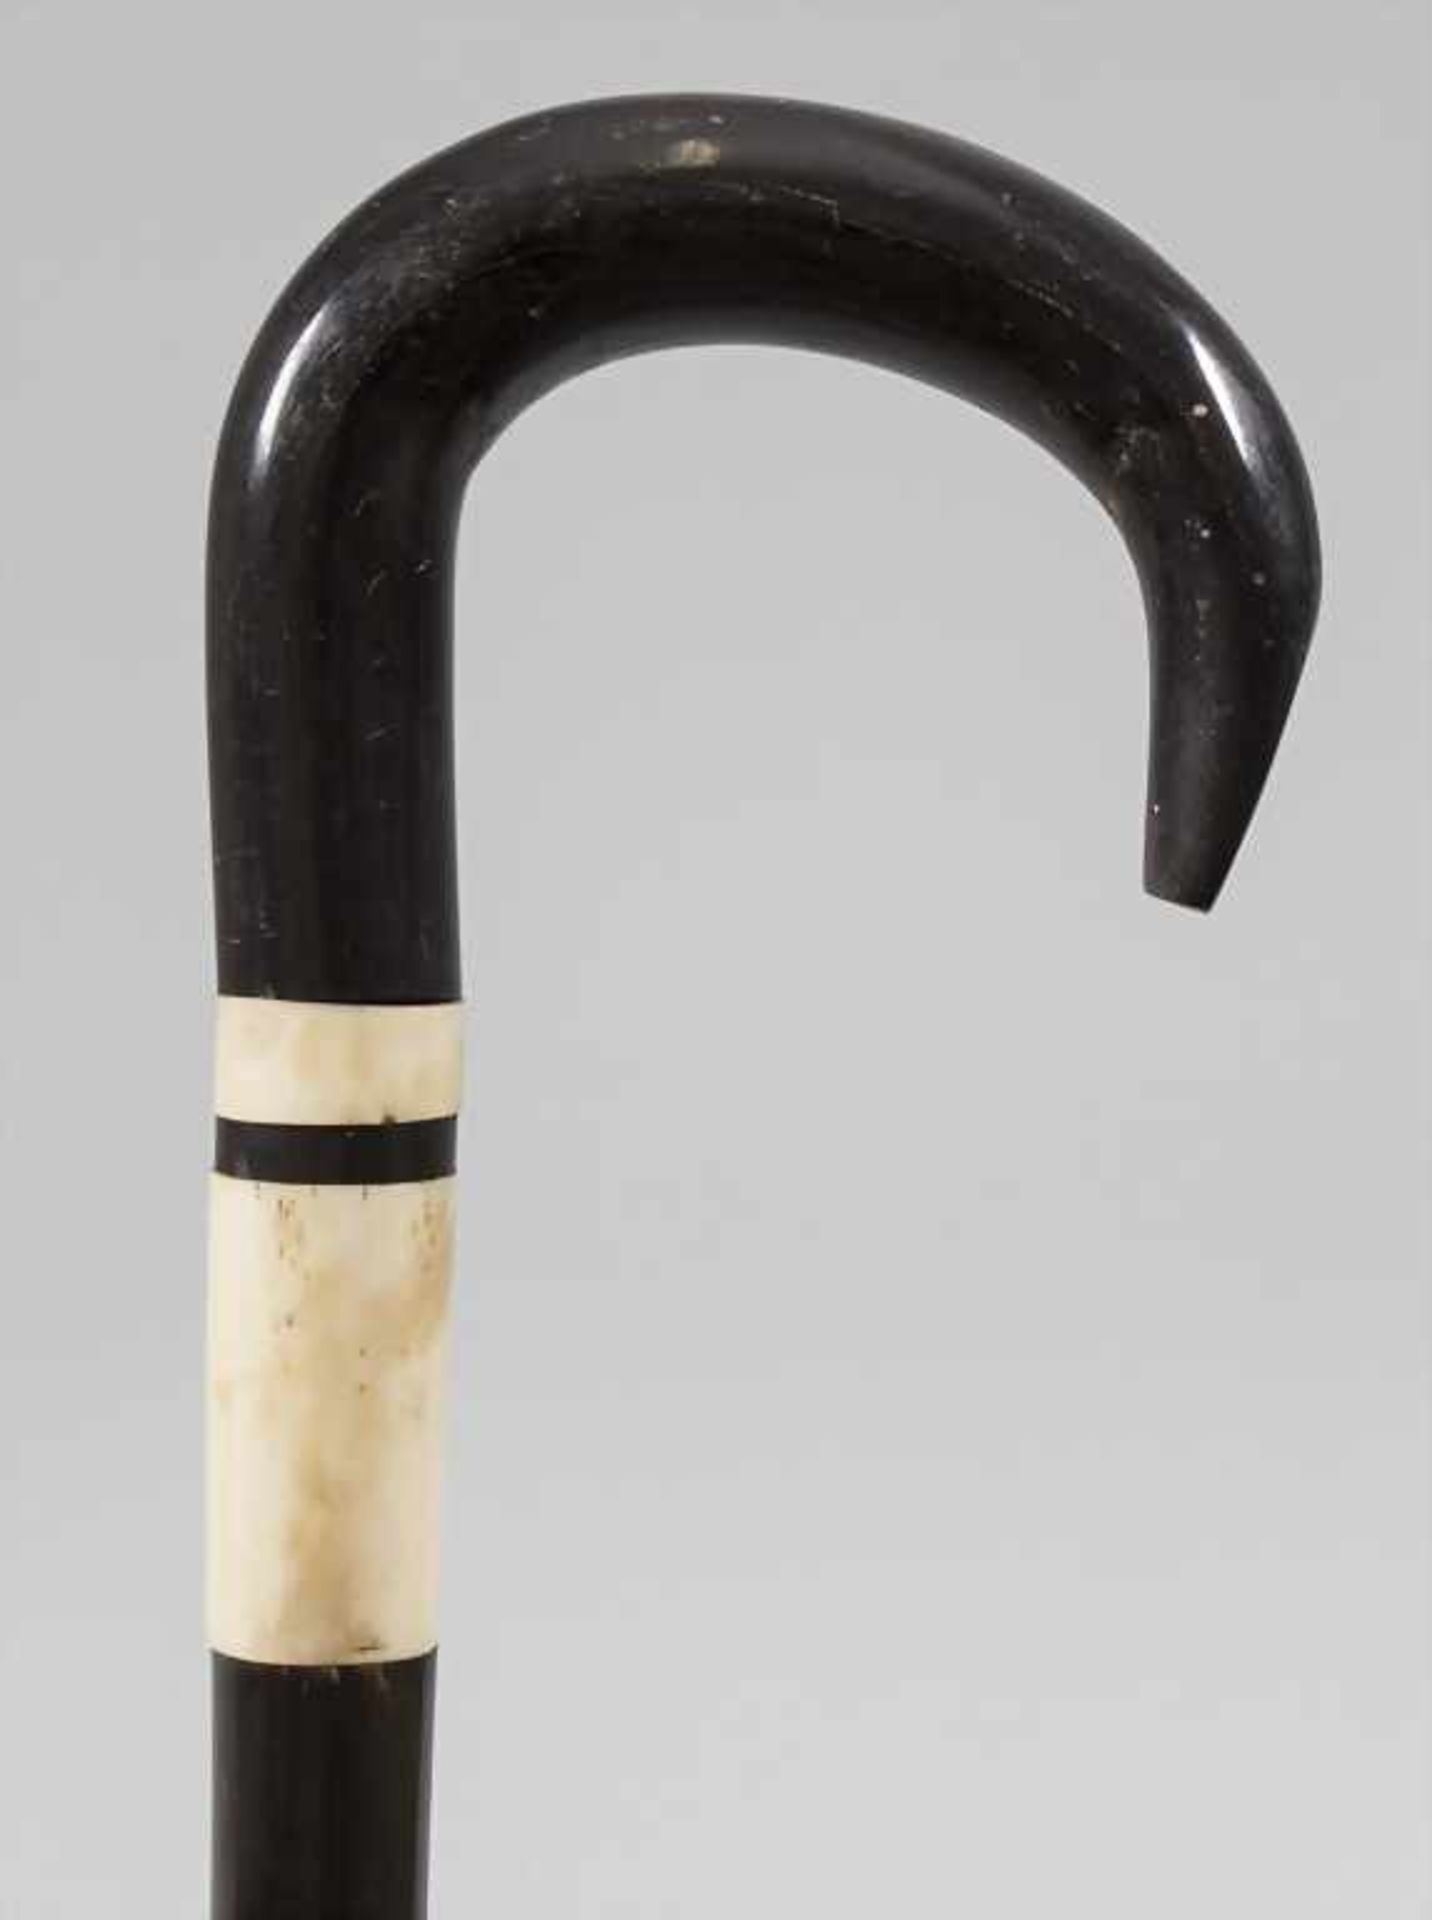 Spazierstock / A walking stick / cane, um 1900 - Bild 2 aus 3